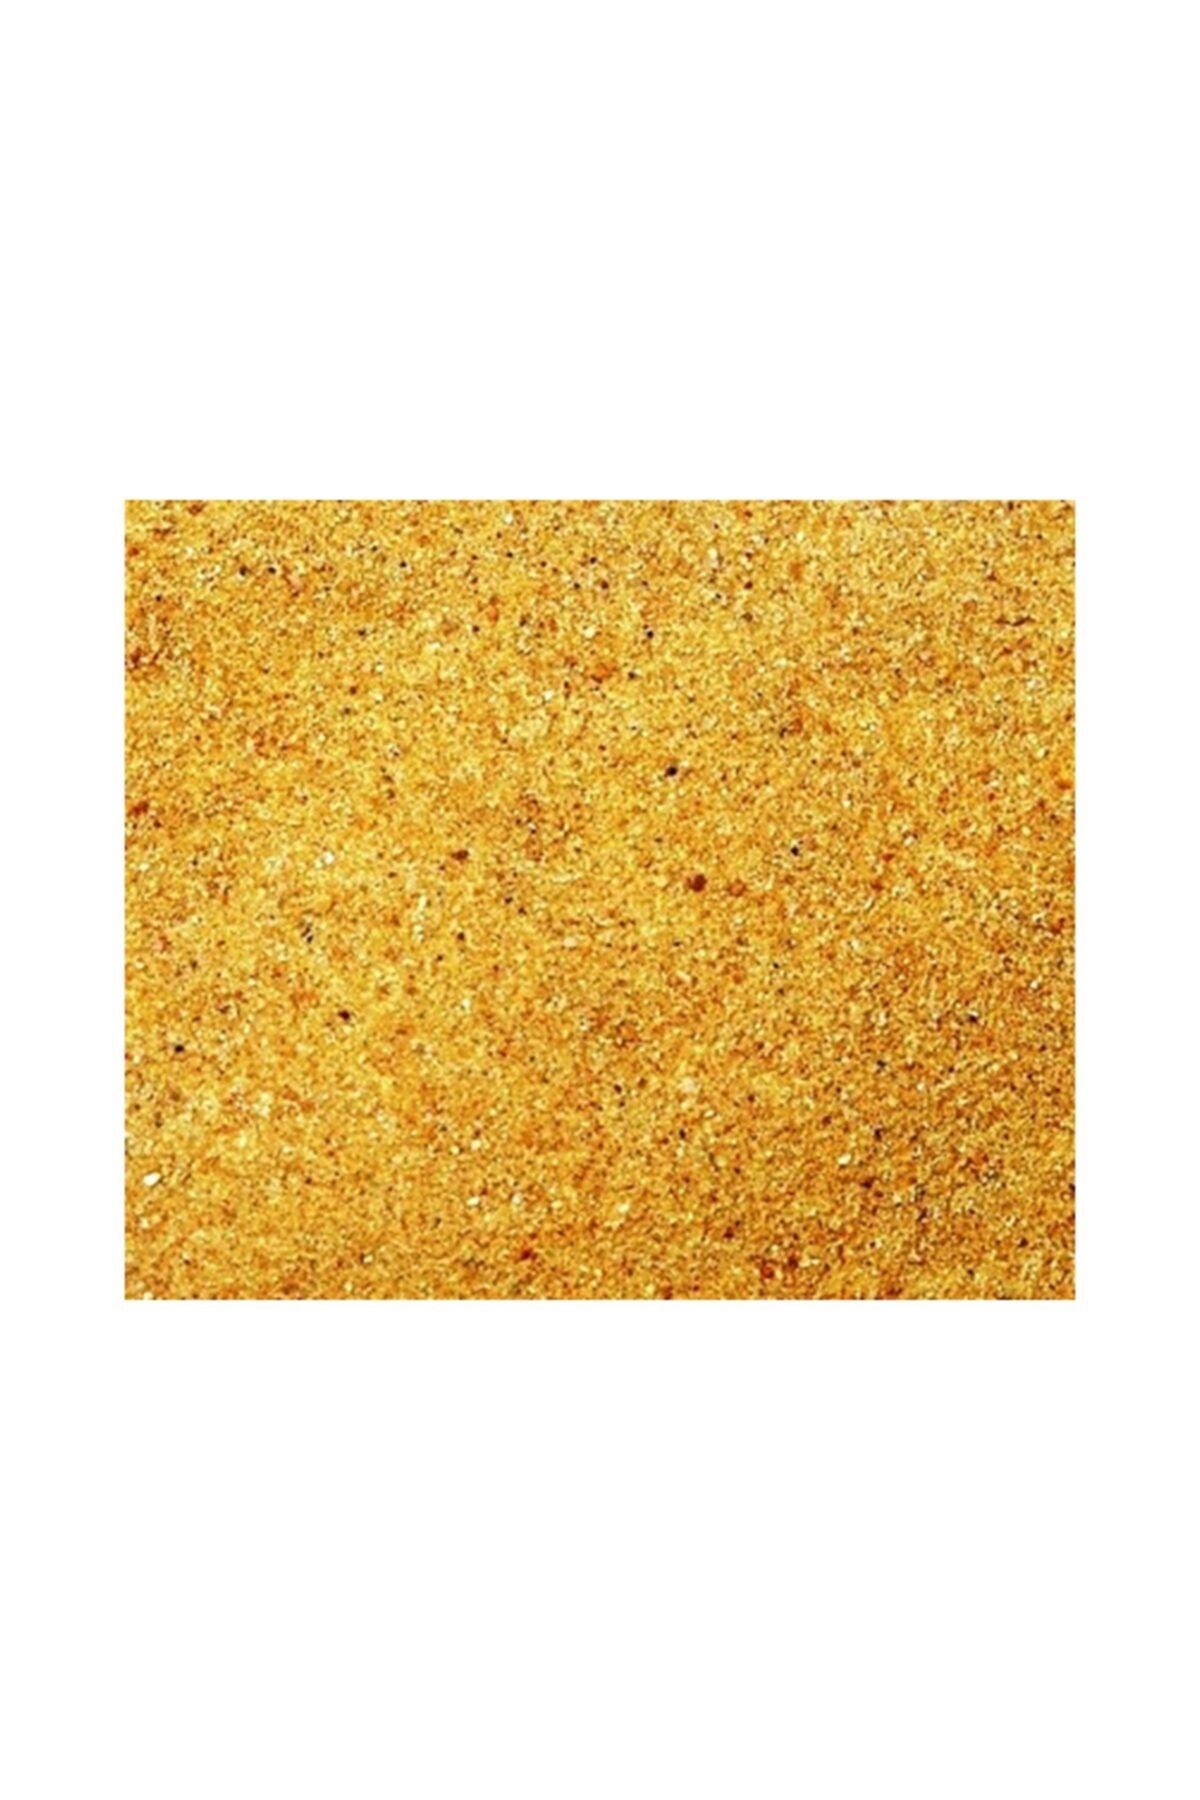 Vitasand Silis Kum Sarı 1kg ( Pro Serisi ) Pro-78